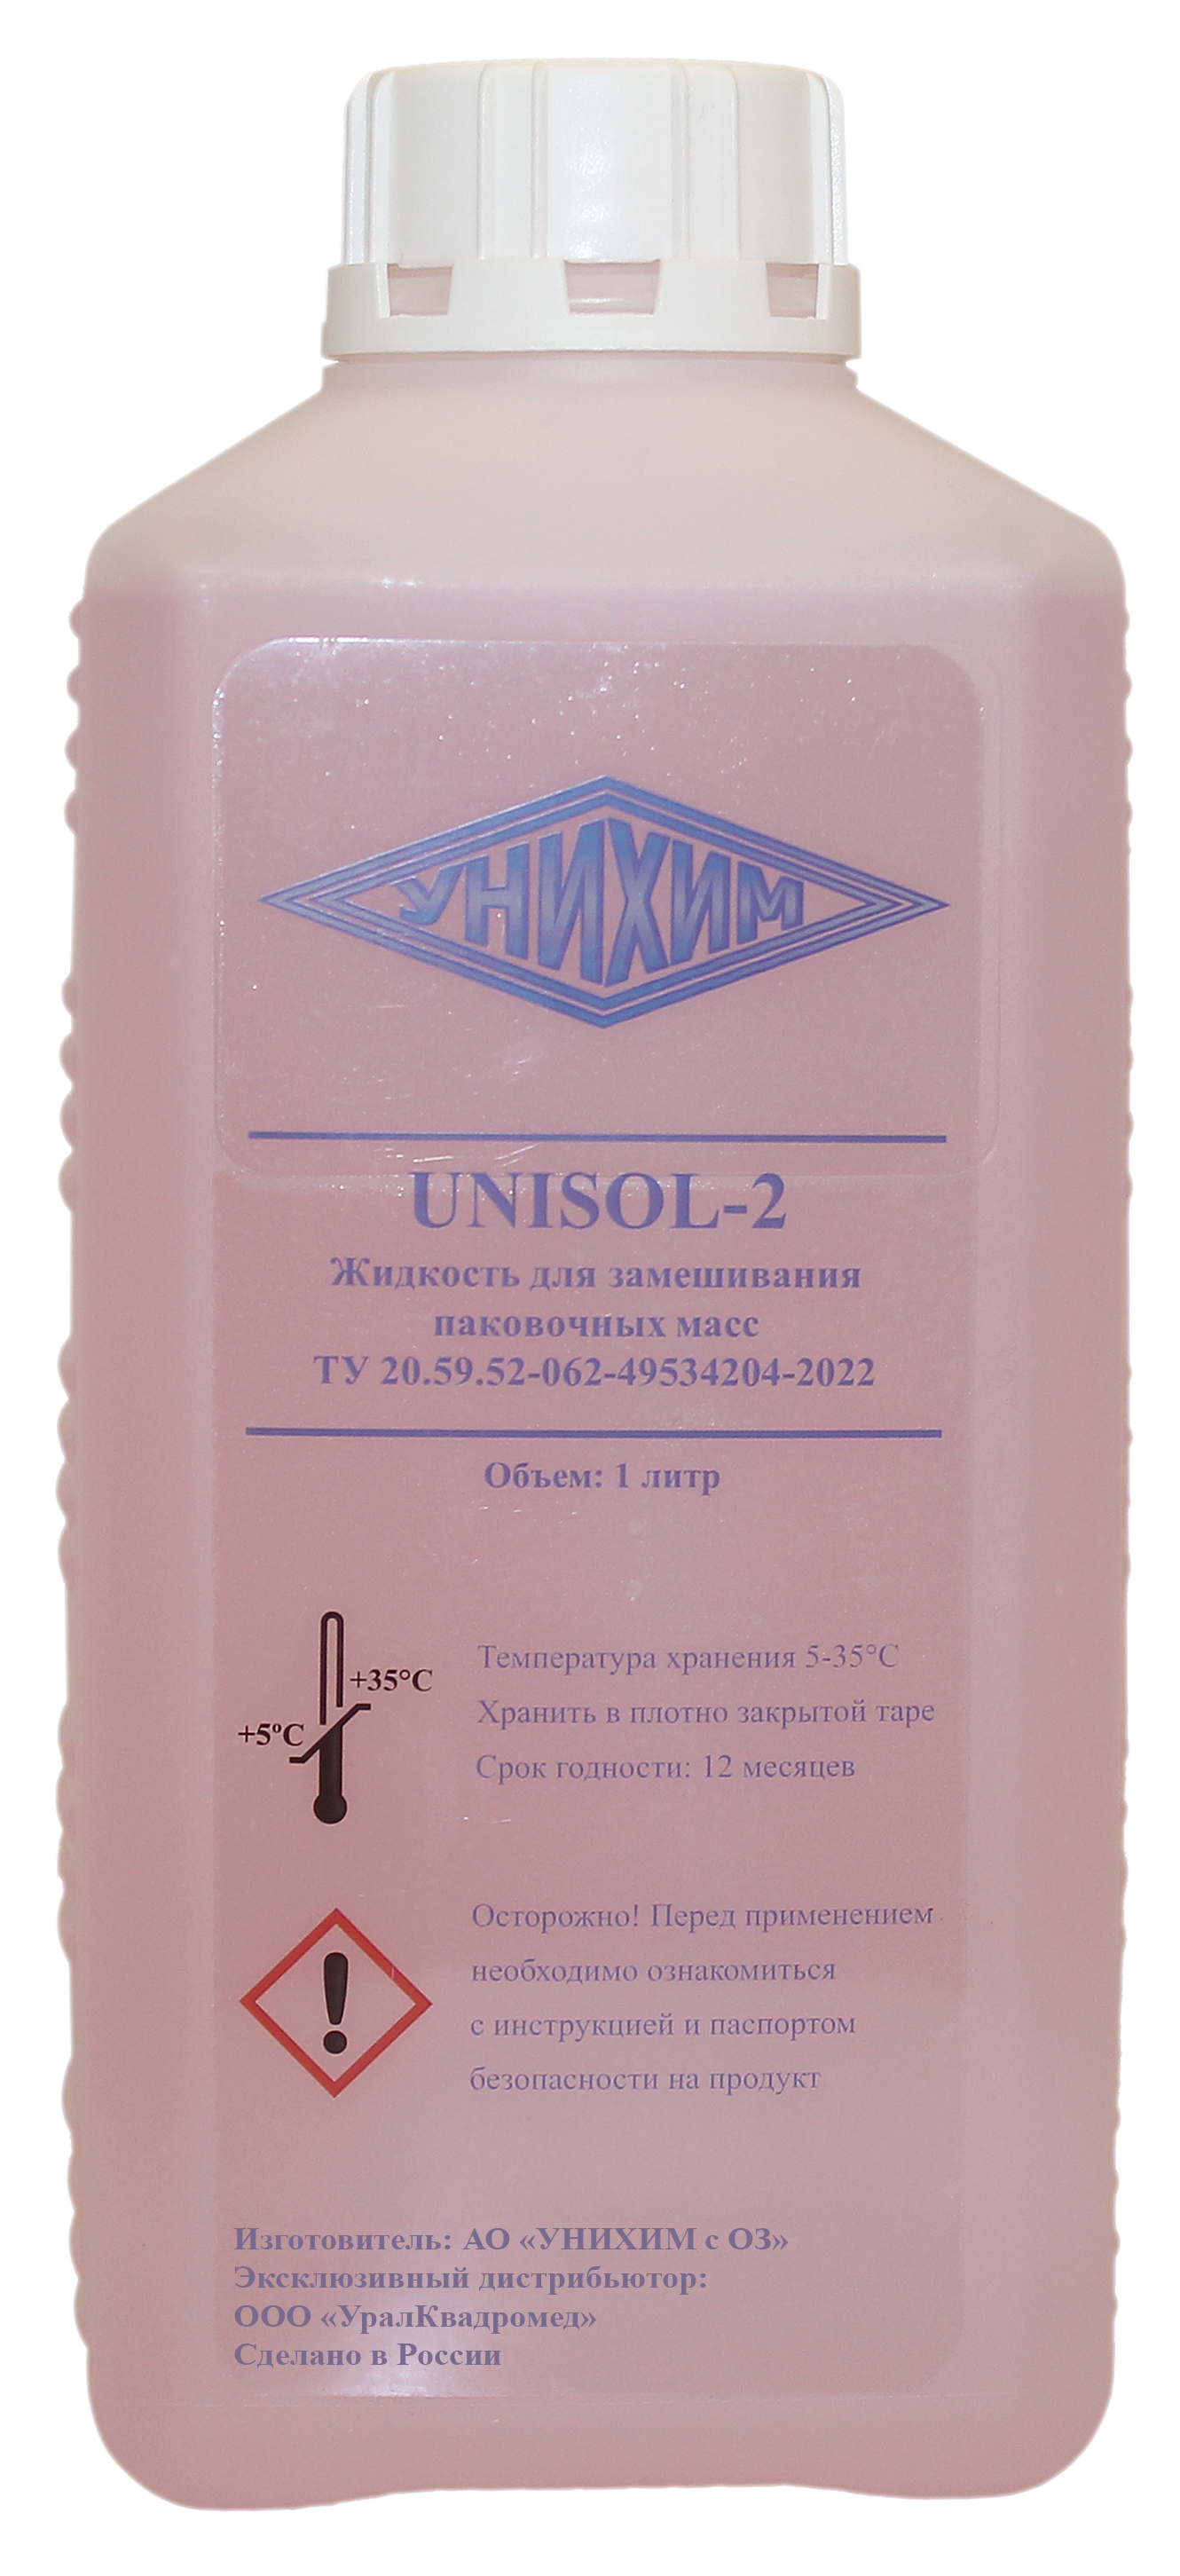 Жидкость UNISOL-2 для паковочной массы (1 л) УНИХИМ 00-00019645